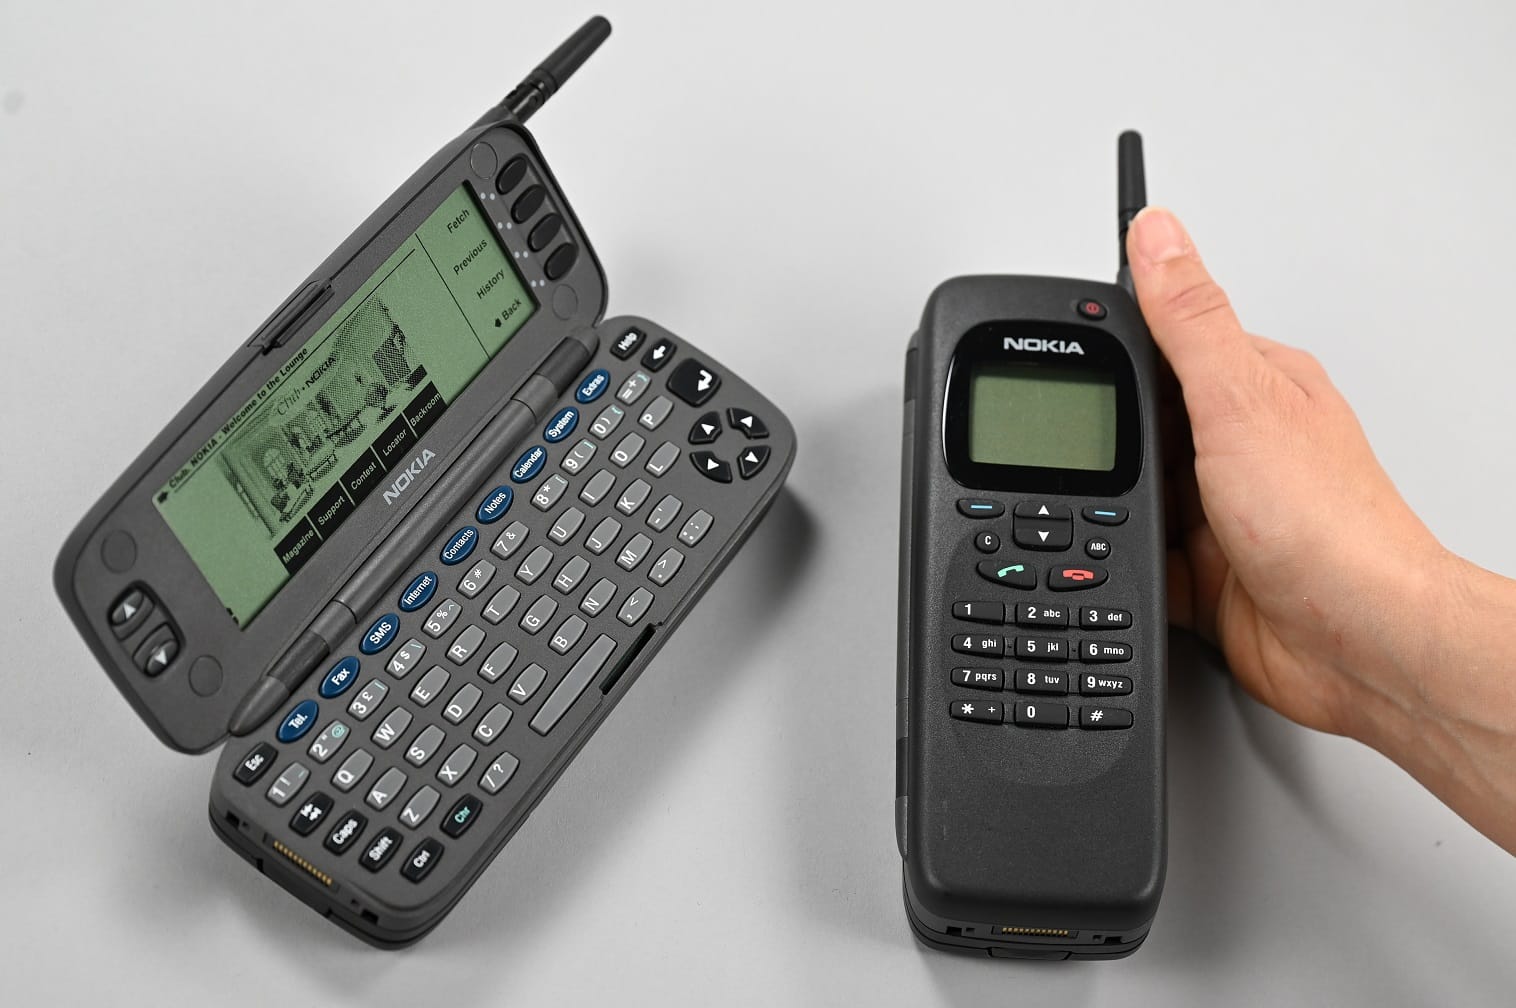 Der "Nokia 9000 Communicator" kam am 15. August 1996 in den Handel. Vor 25 Jahren war er mit Fax-Funktion, Kalender und Taschenrechner ausgestattet. Heute nutzen viele Bürger Smartphones, die noch viel mehr können. Manche Apps ersetzen sogar Alltagsgegenstände. Eine Auswahl: